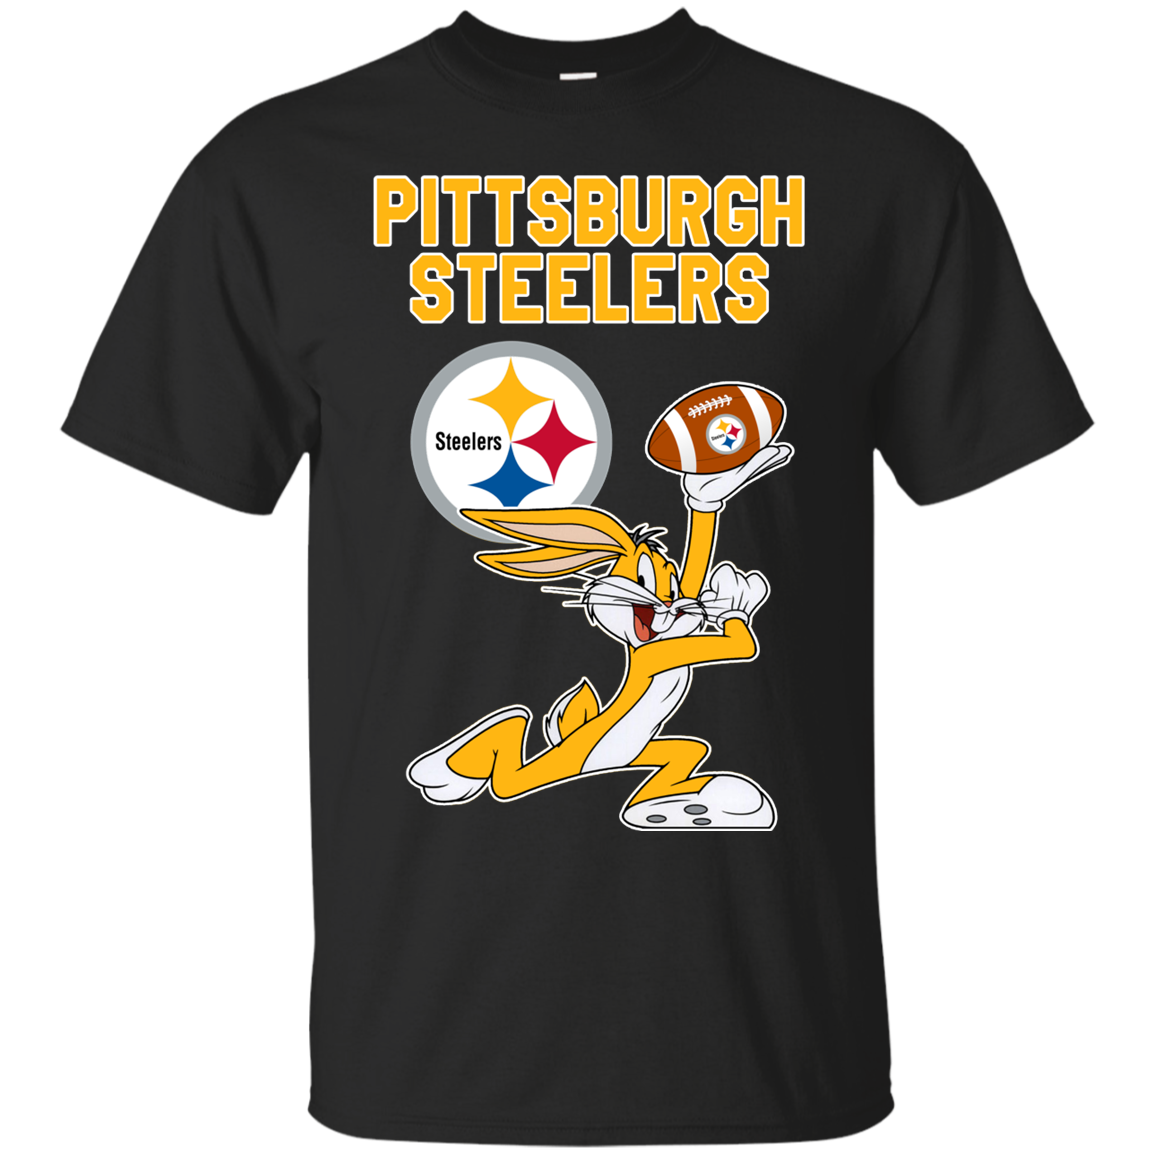 Pittsburgh Steelers Bugs Bunny Shirts - Teesmiley